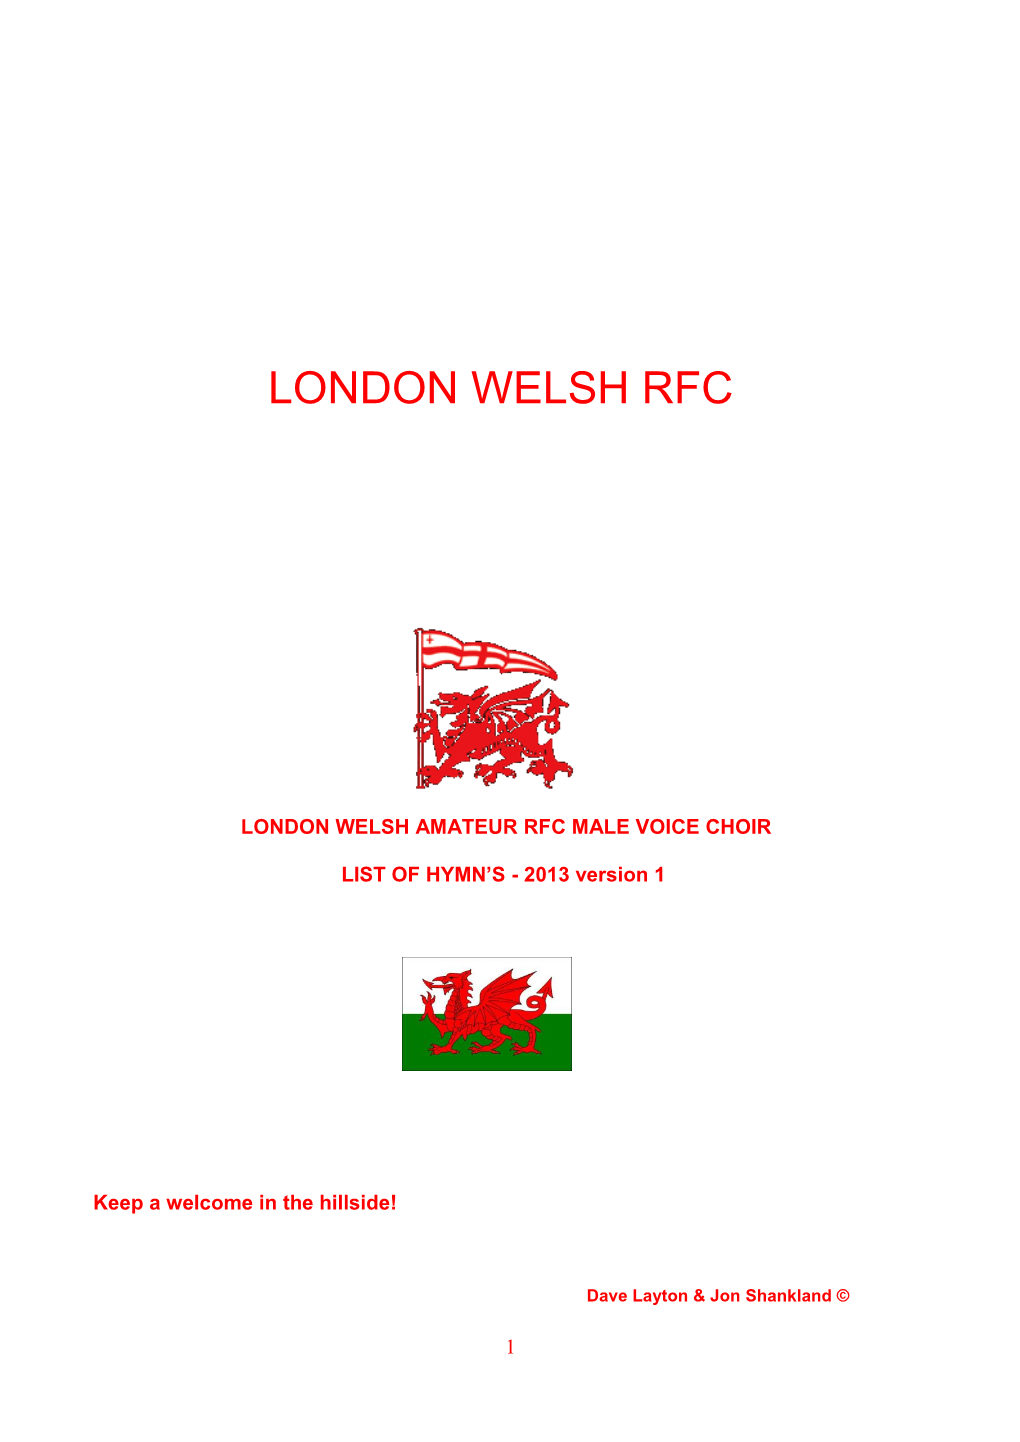 London Welsh Rfc